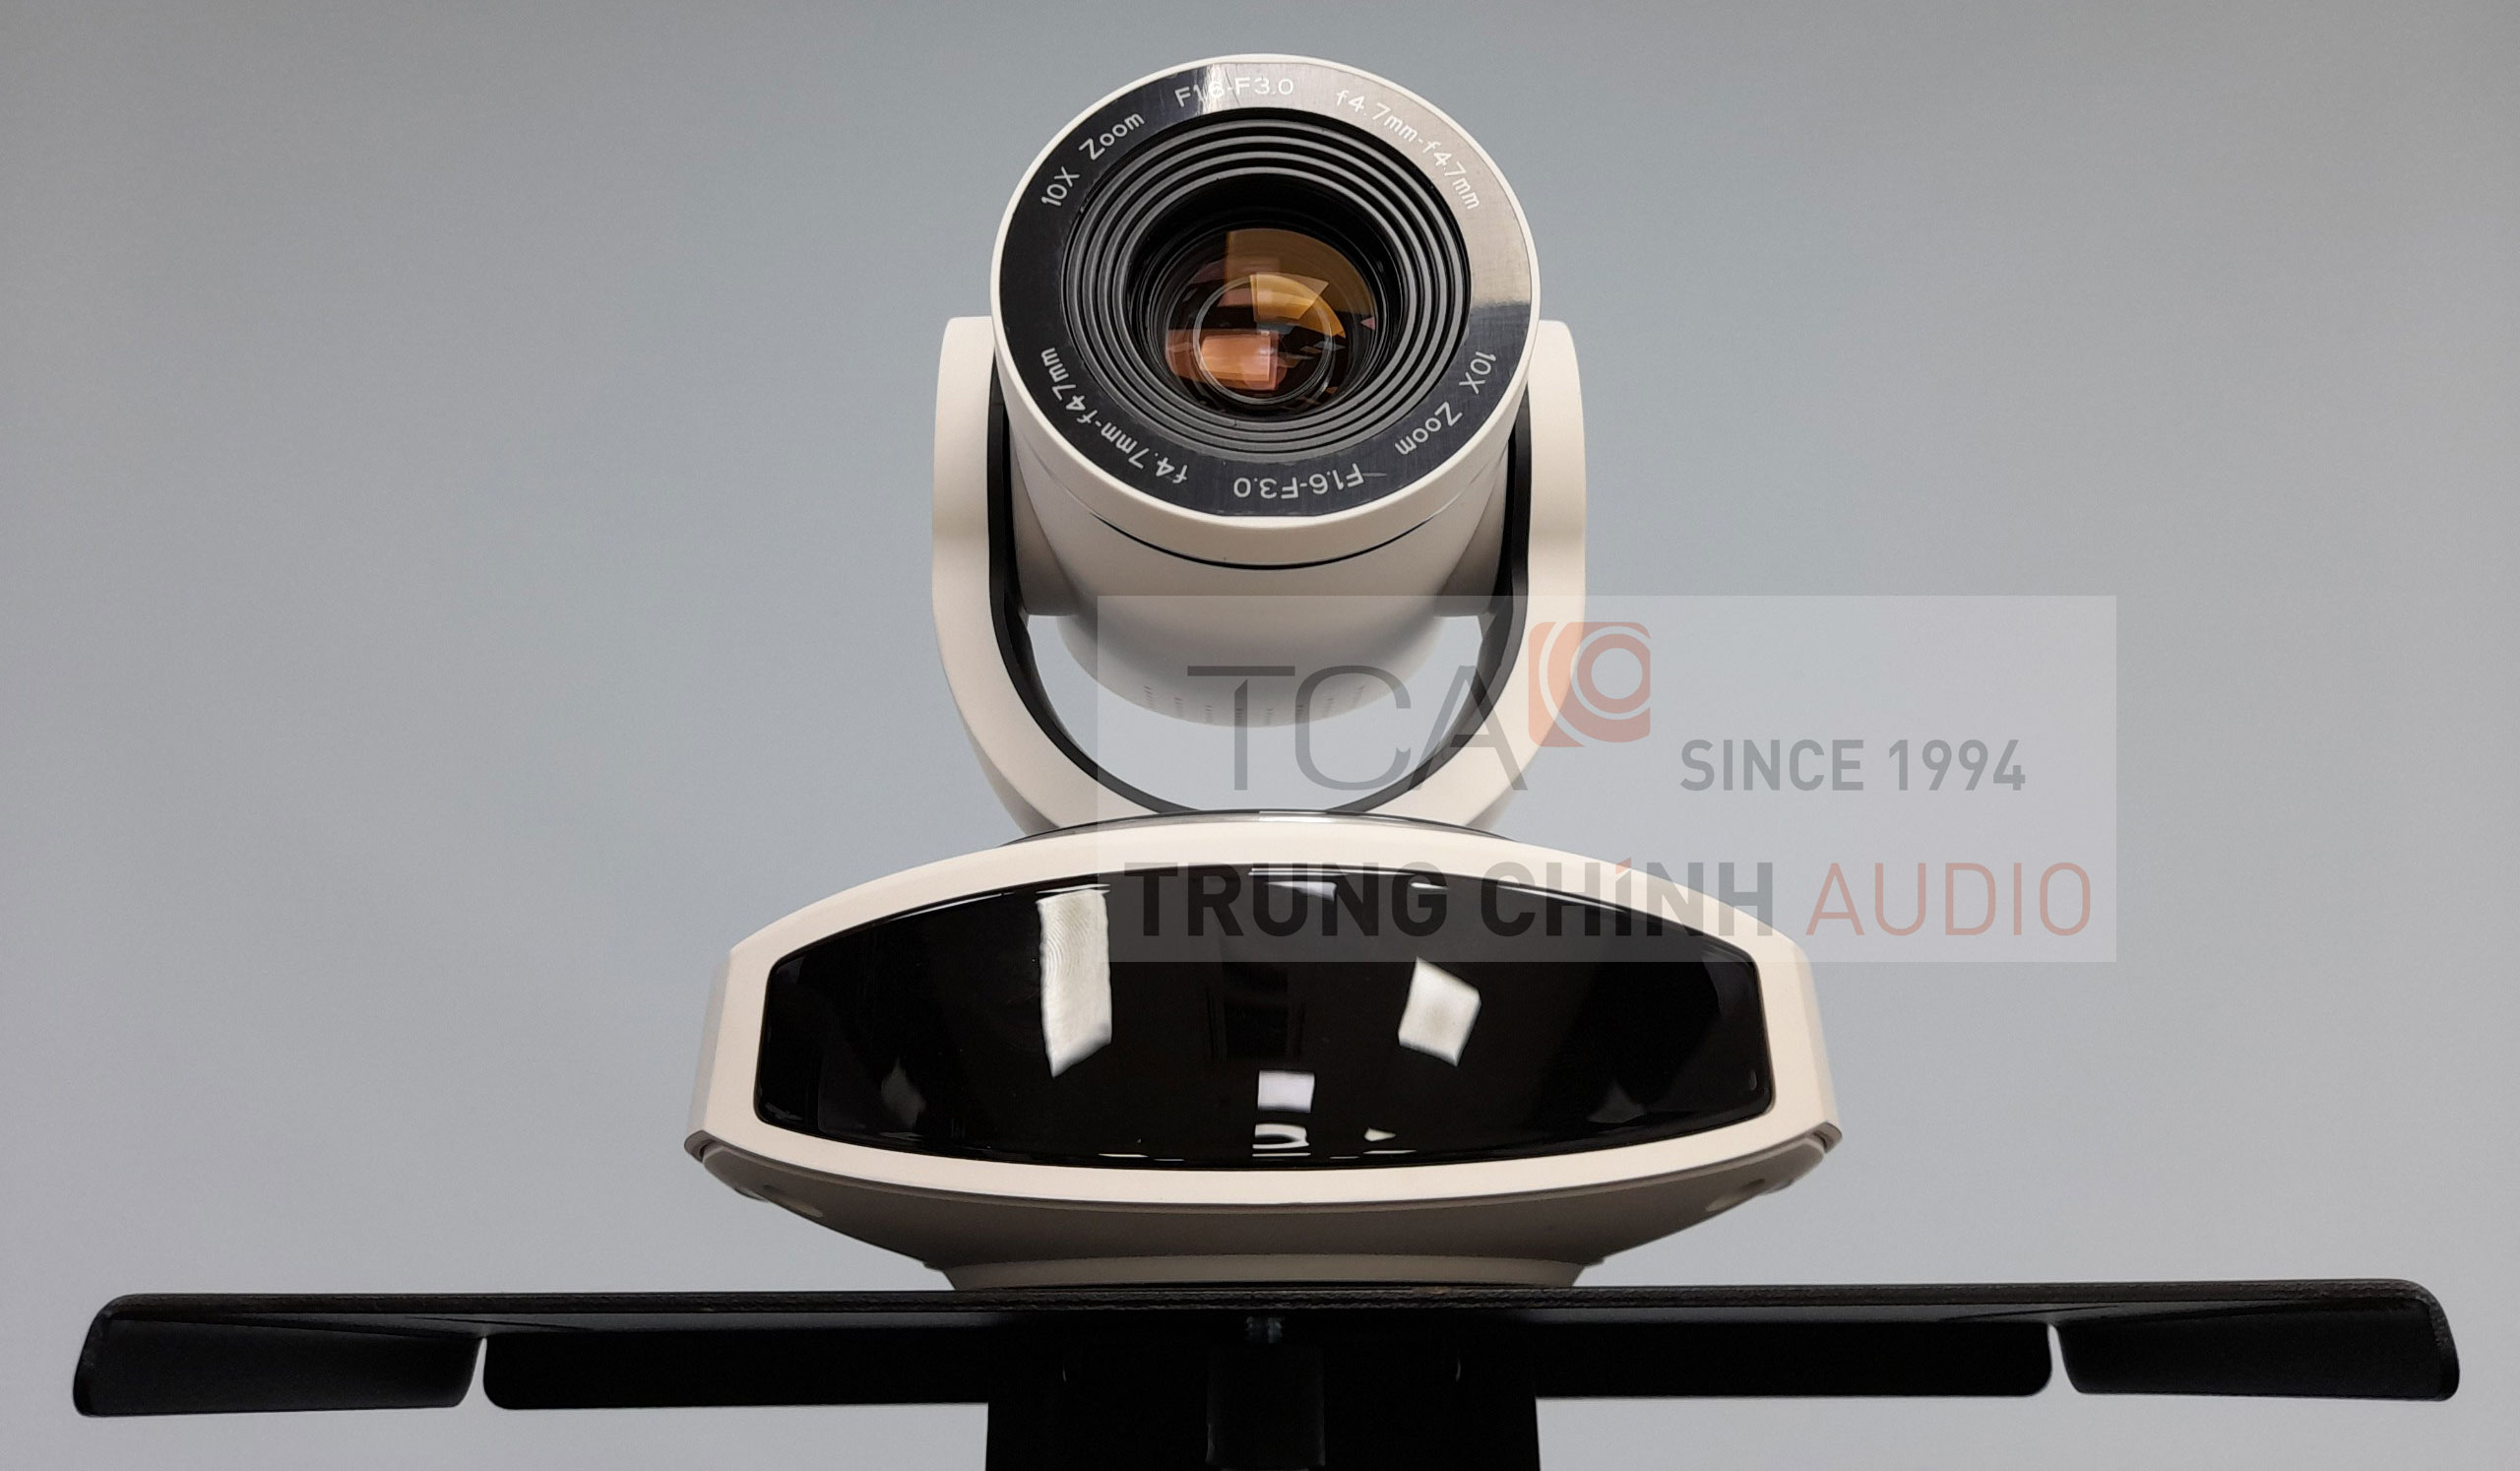 Minrray UV540AS-10-U2-RS232 Camera thiết bị hội nghị trực tuyến